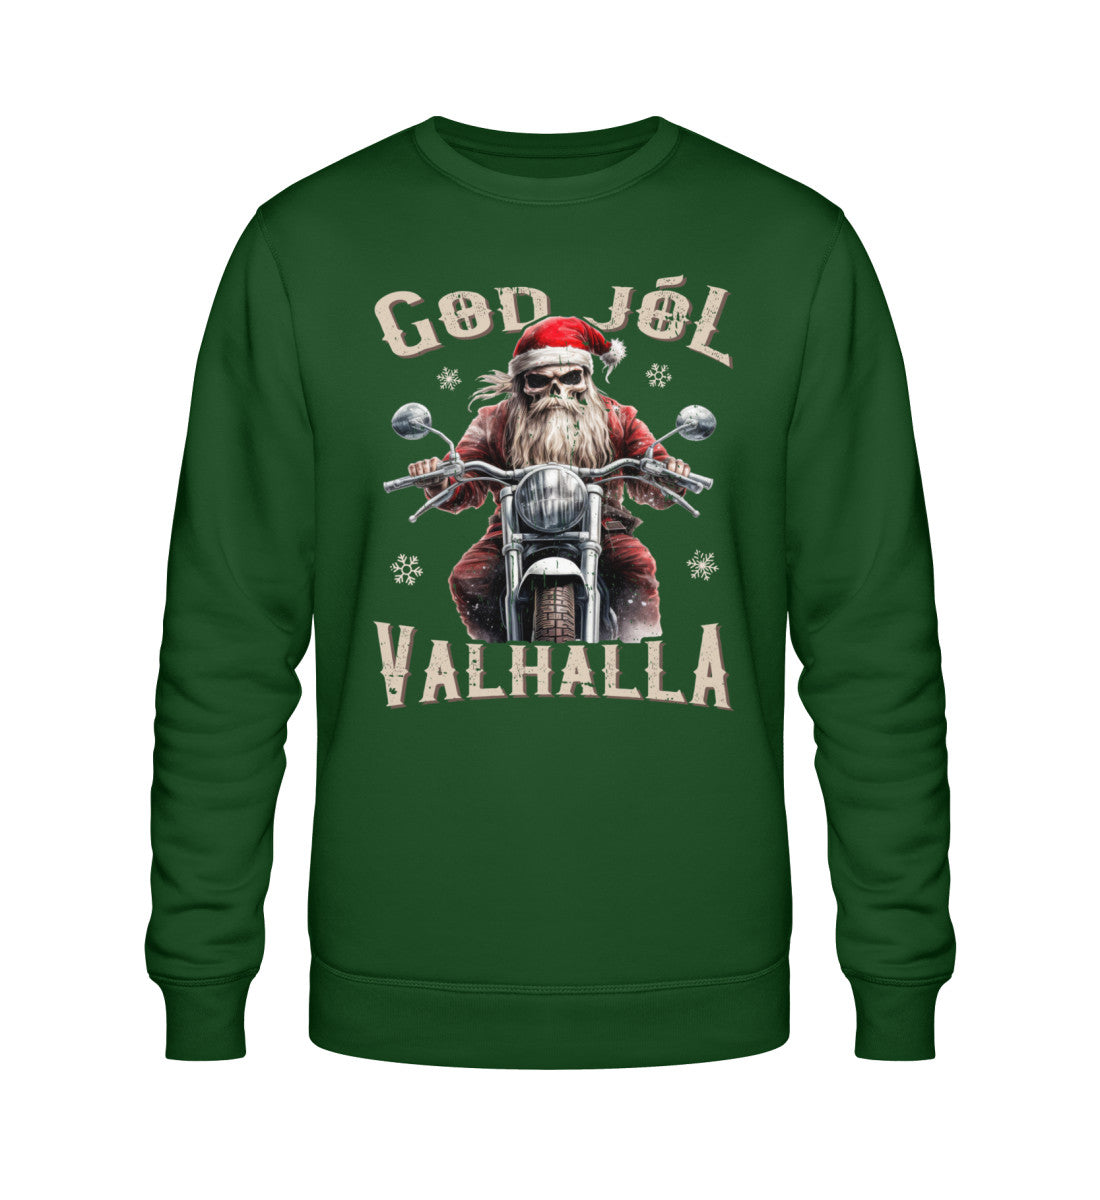 Ein Biker Sweatshirt für Motorradfahrer von Wingbikers mit dem Aufdruck, God Jól Valhalla - Wikinger auf dem Motorrad mit Weihnachtsmütze - in dunkelgrün.